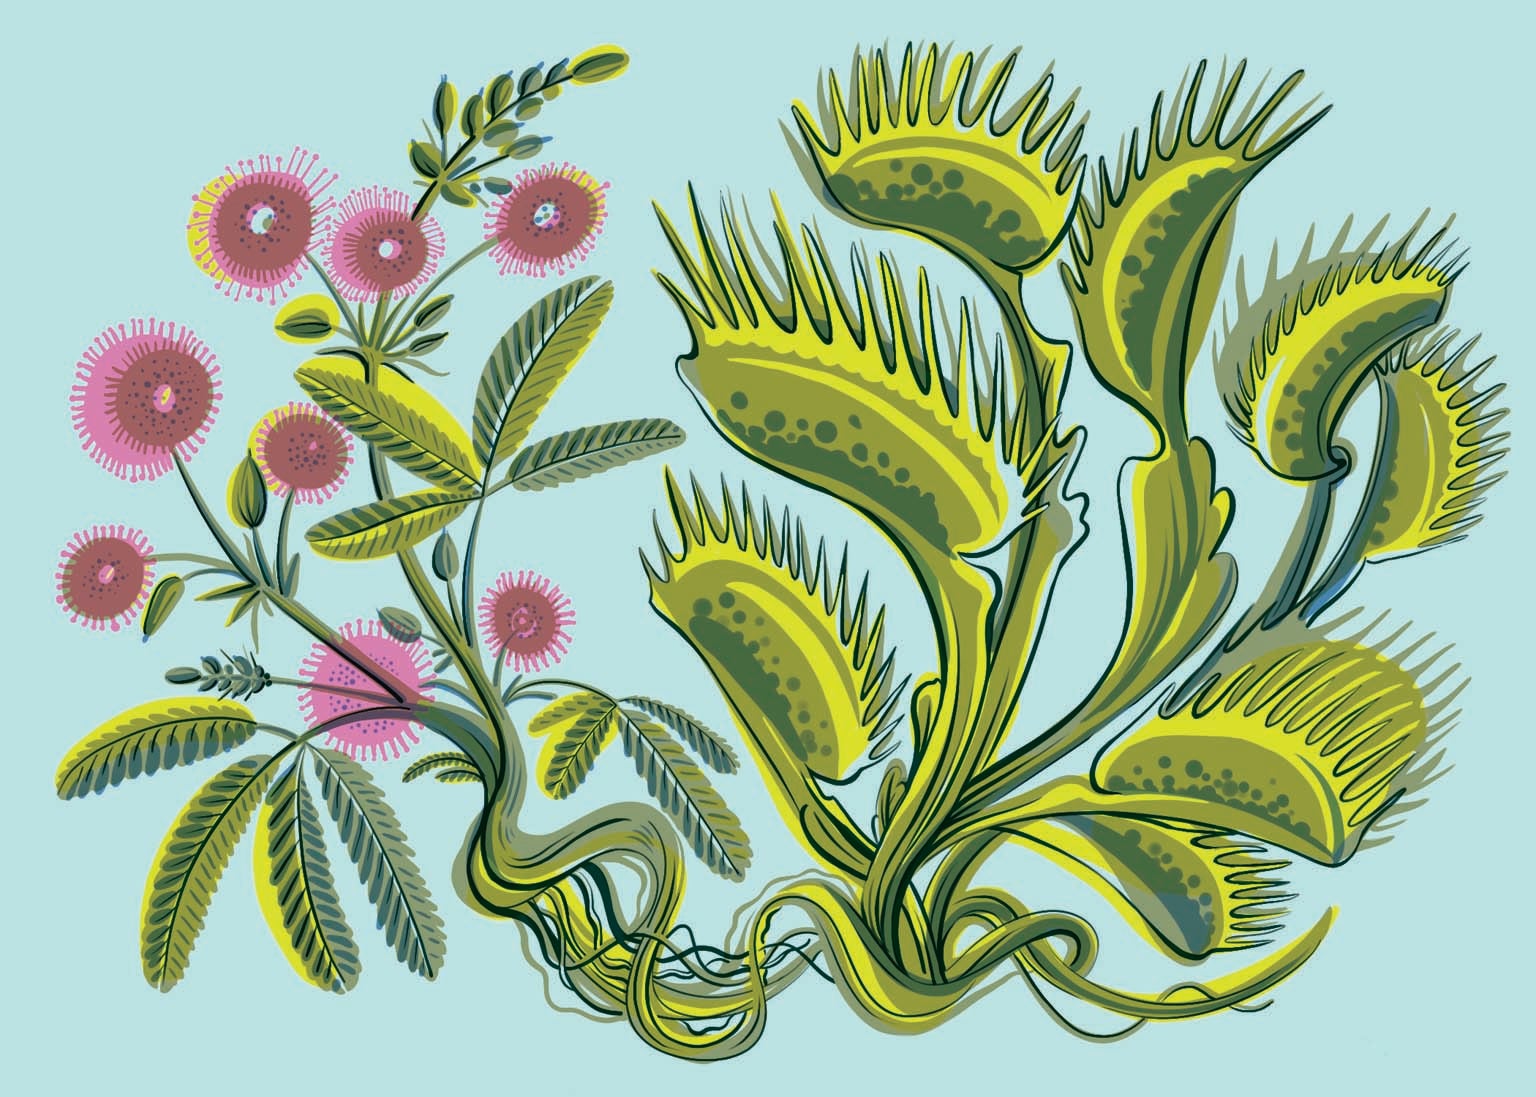 Растения используют биоэлектричество для общения и разных действий. Если потрогать сенсорный волосок на венерианской мухоловке (справа), а мухоловку соединить проводом с мимозой стыдливой (слева), листья на мимозе свернутся и завянут.